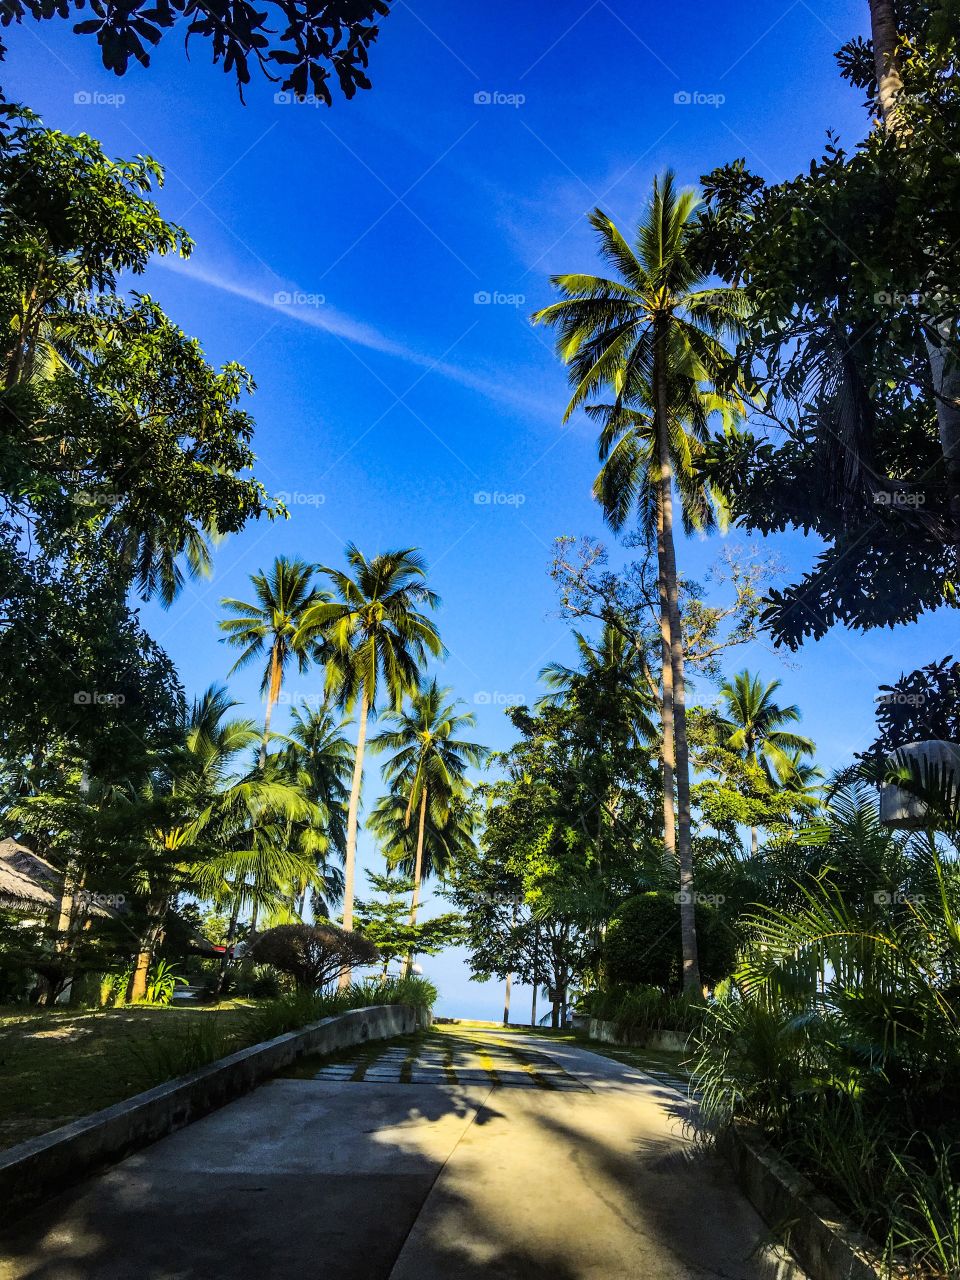 Palms island Koh Samui Thailand 